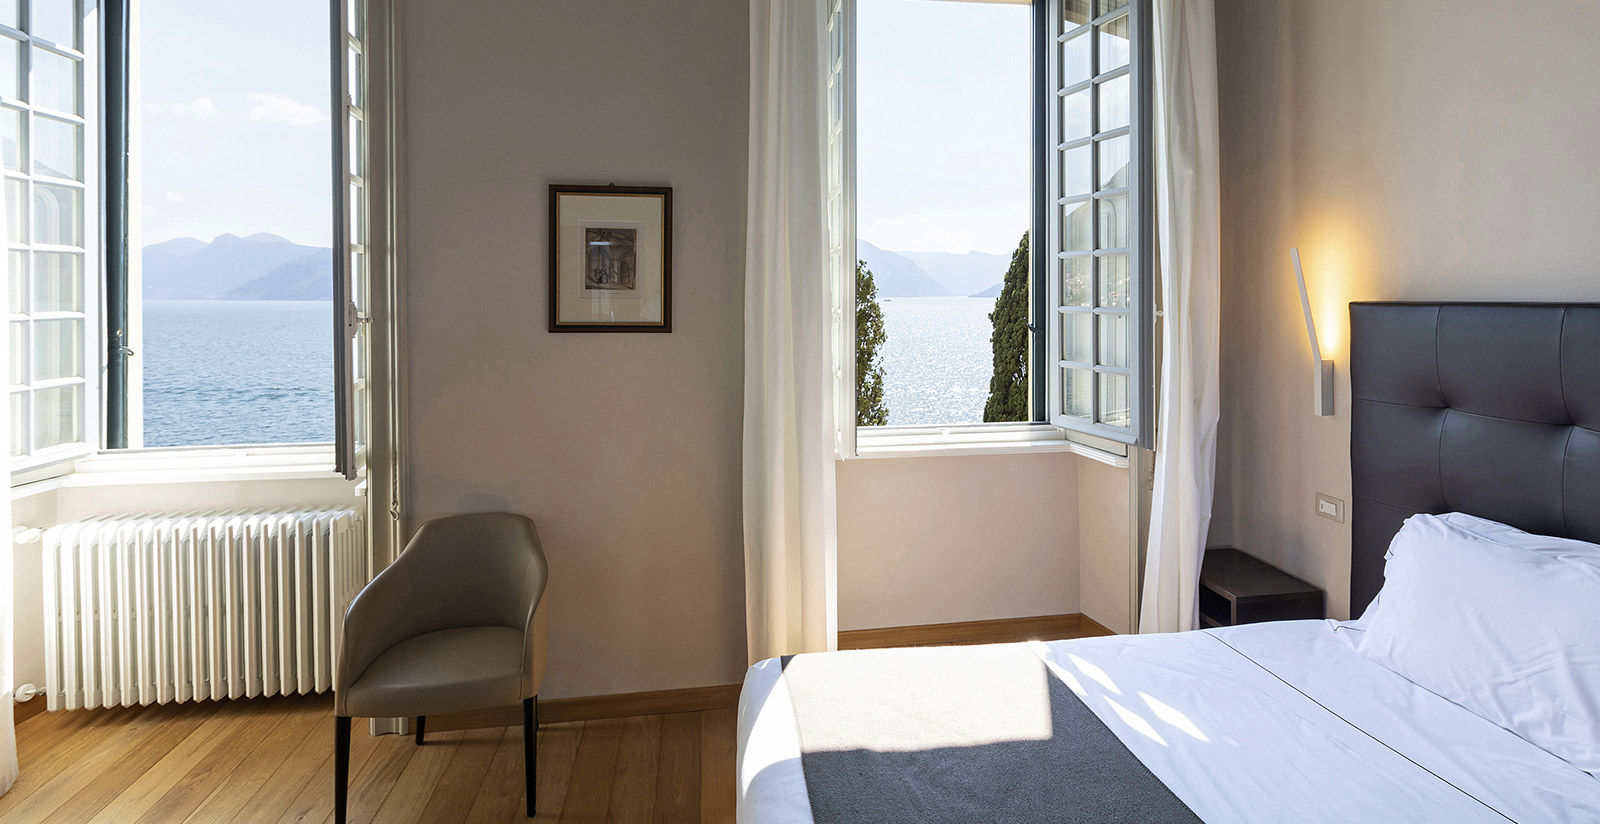 Hotel Villa Cipressi - Prestige rooms with lake view 5